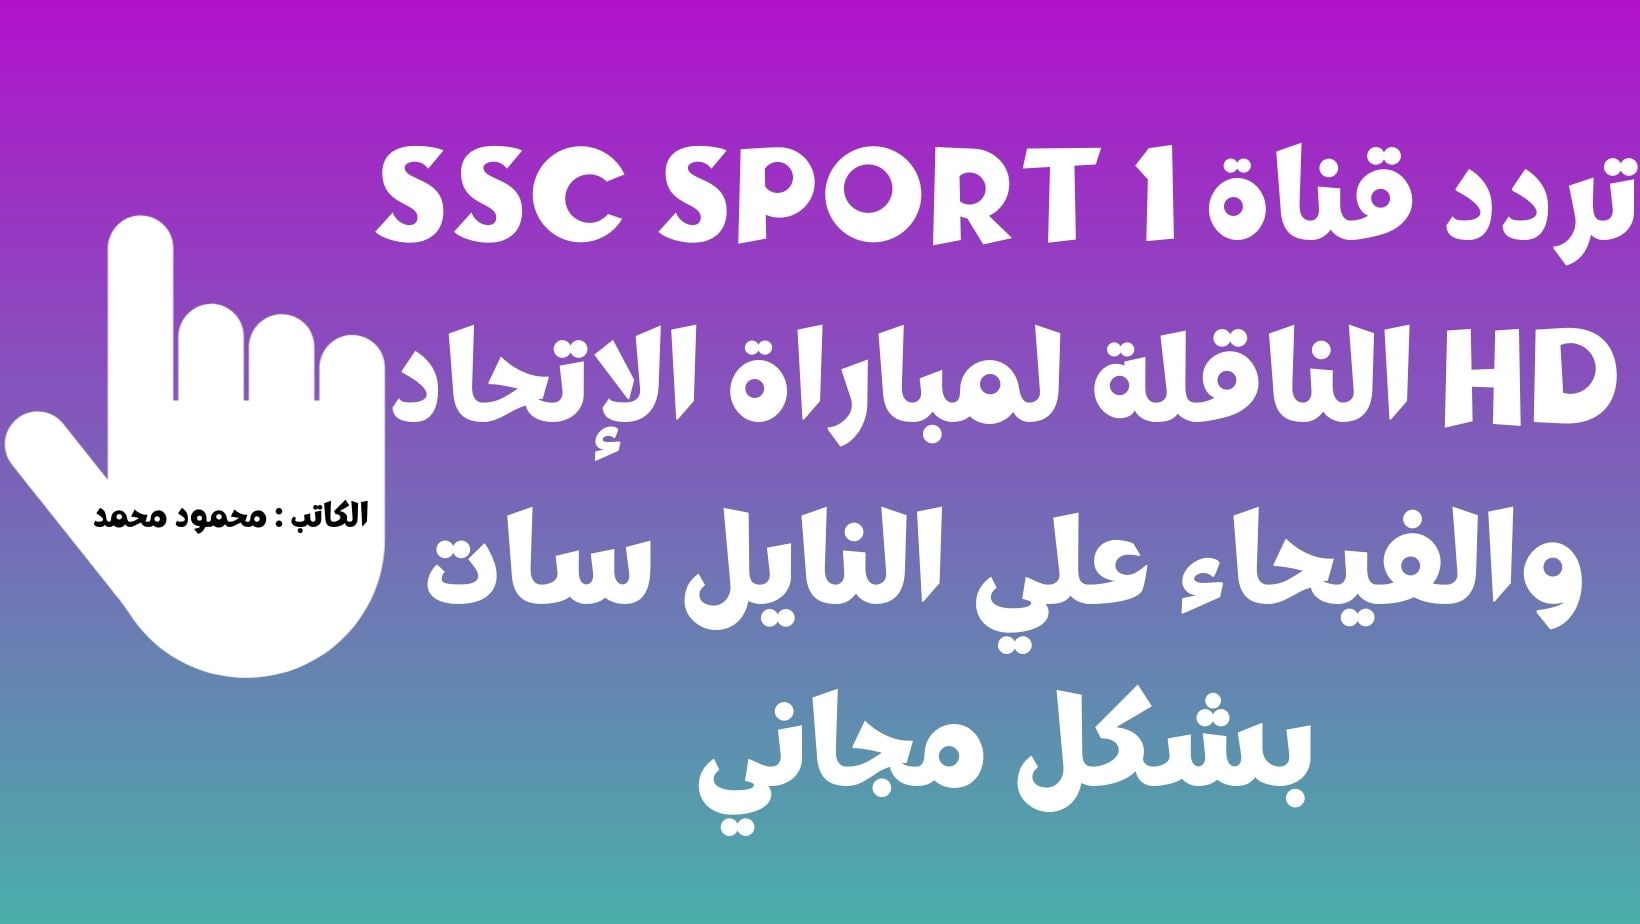 تردد قناة SSC SPORT 1 HD